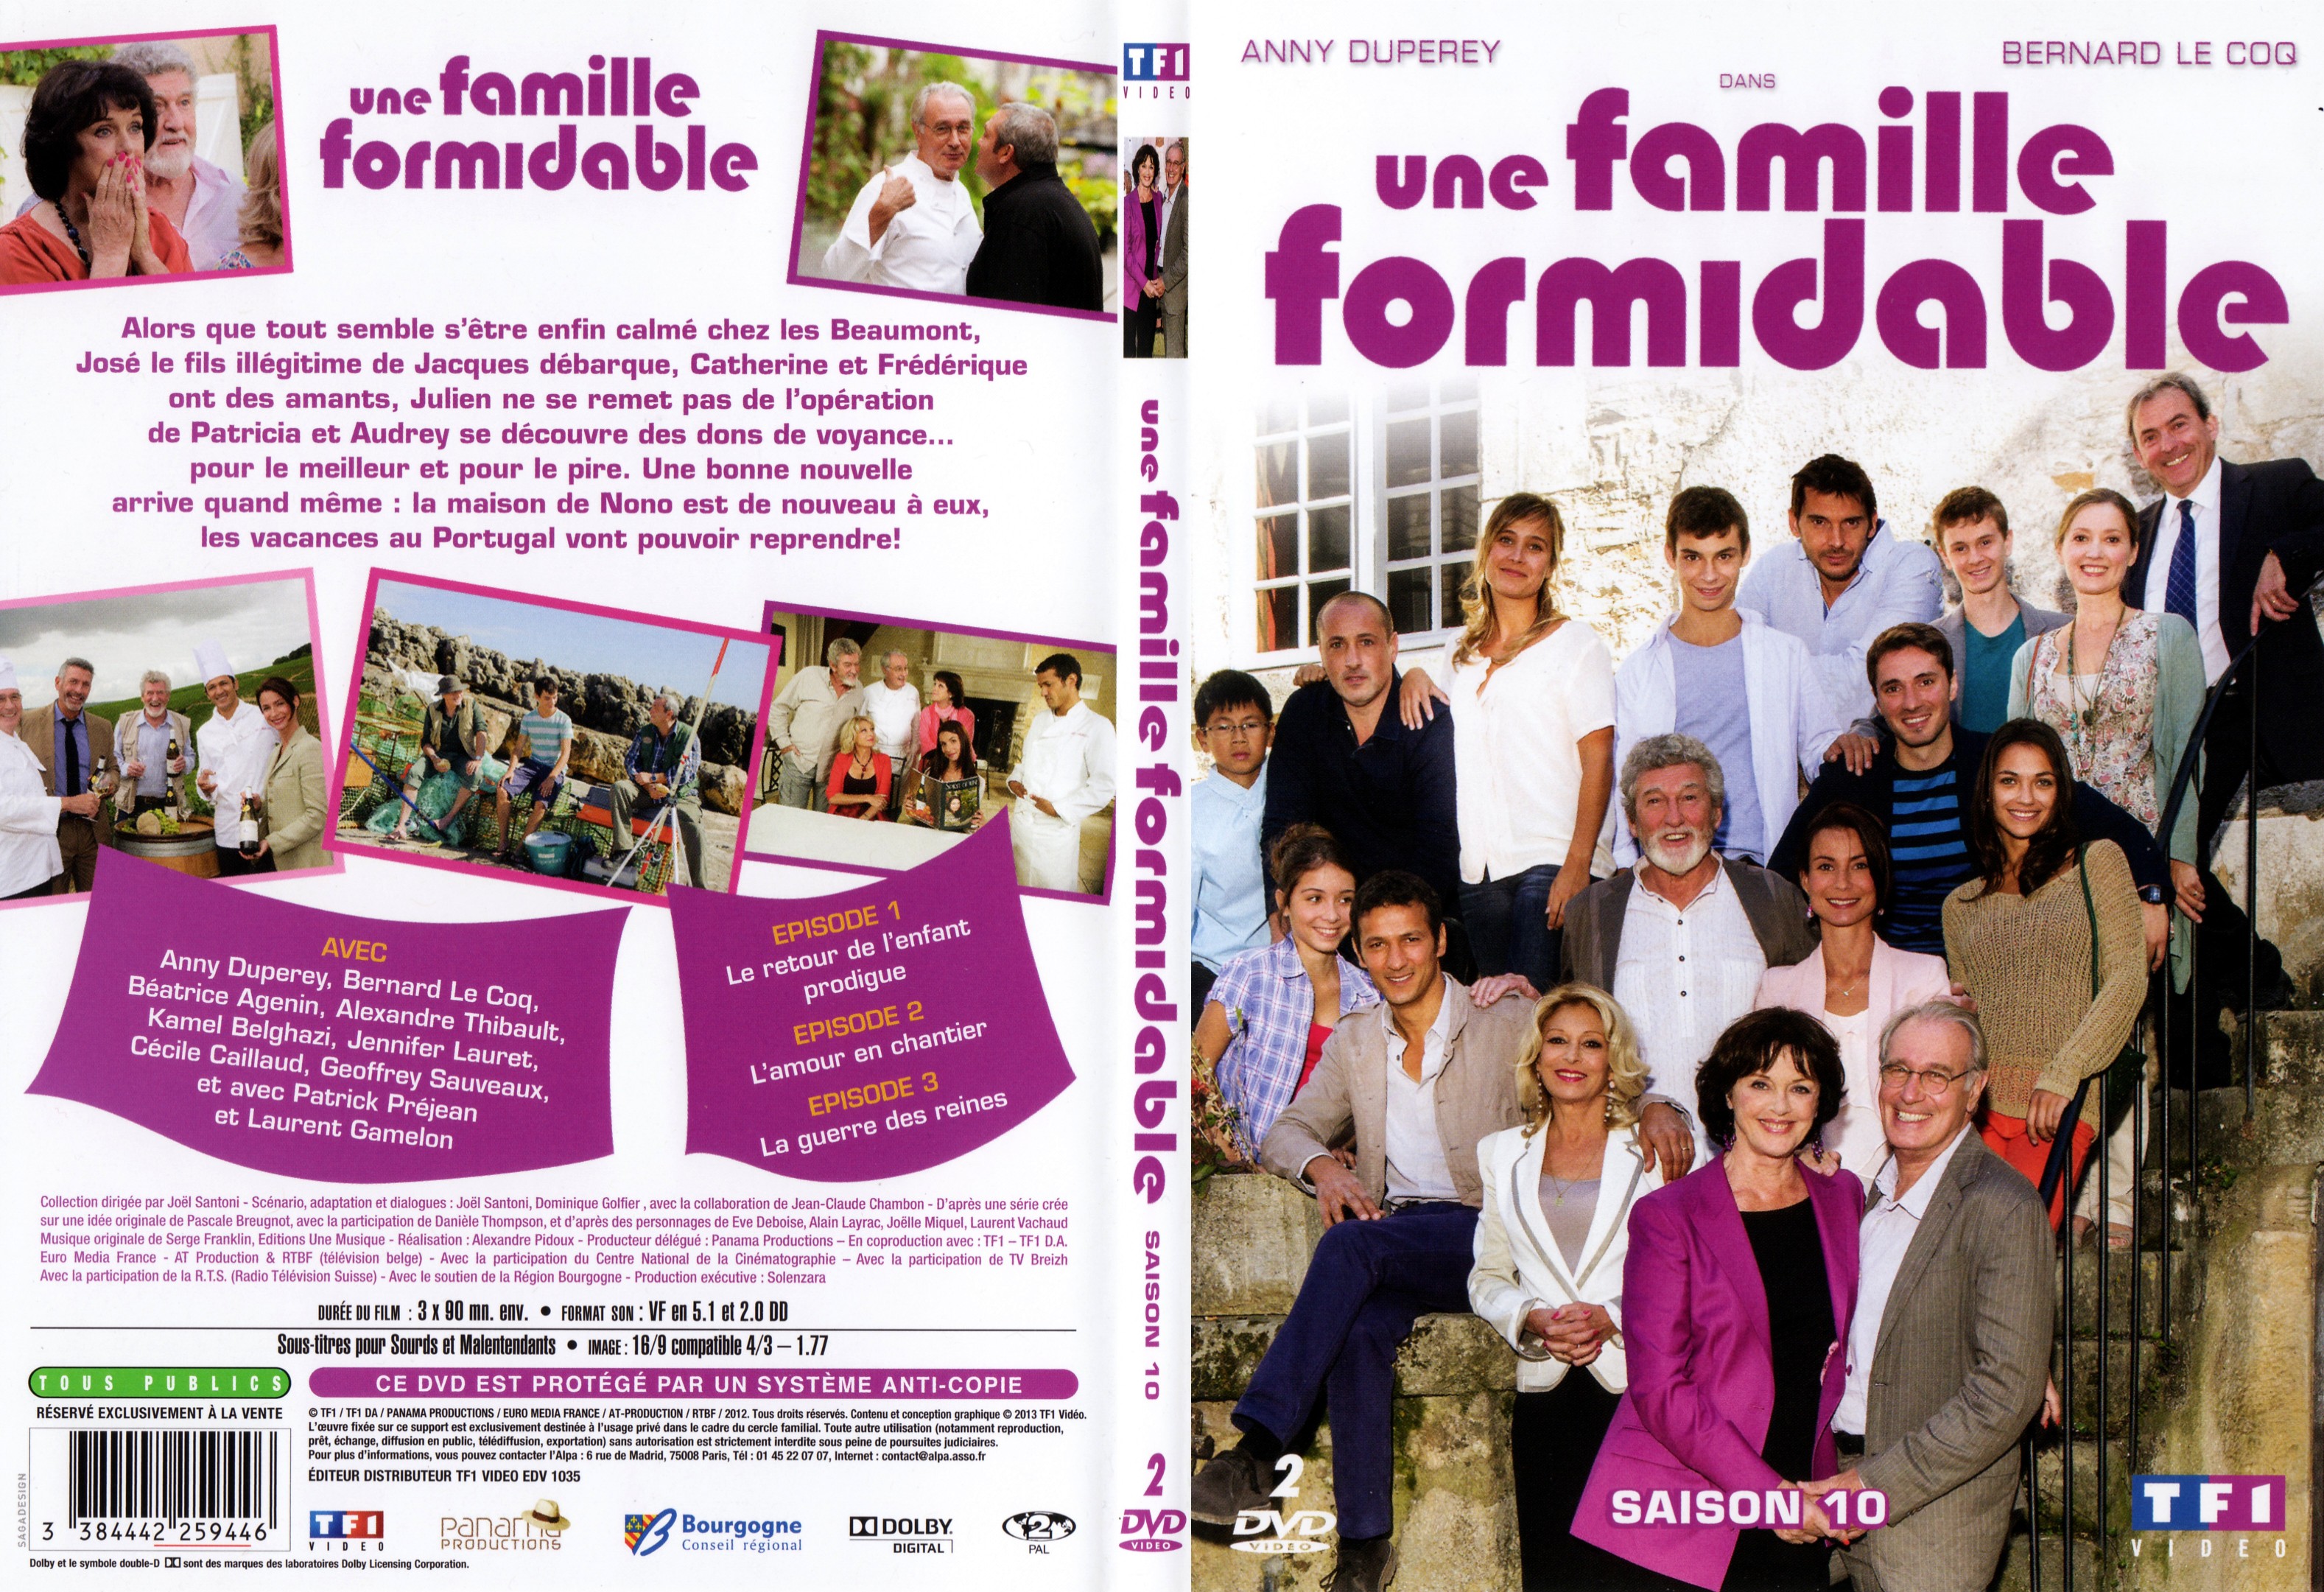 Jaquette Dvd De Une Famille Formidable Episodes 28 à 30 Saison 10 Slim Cinéma Passion